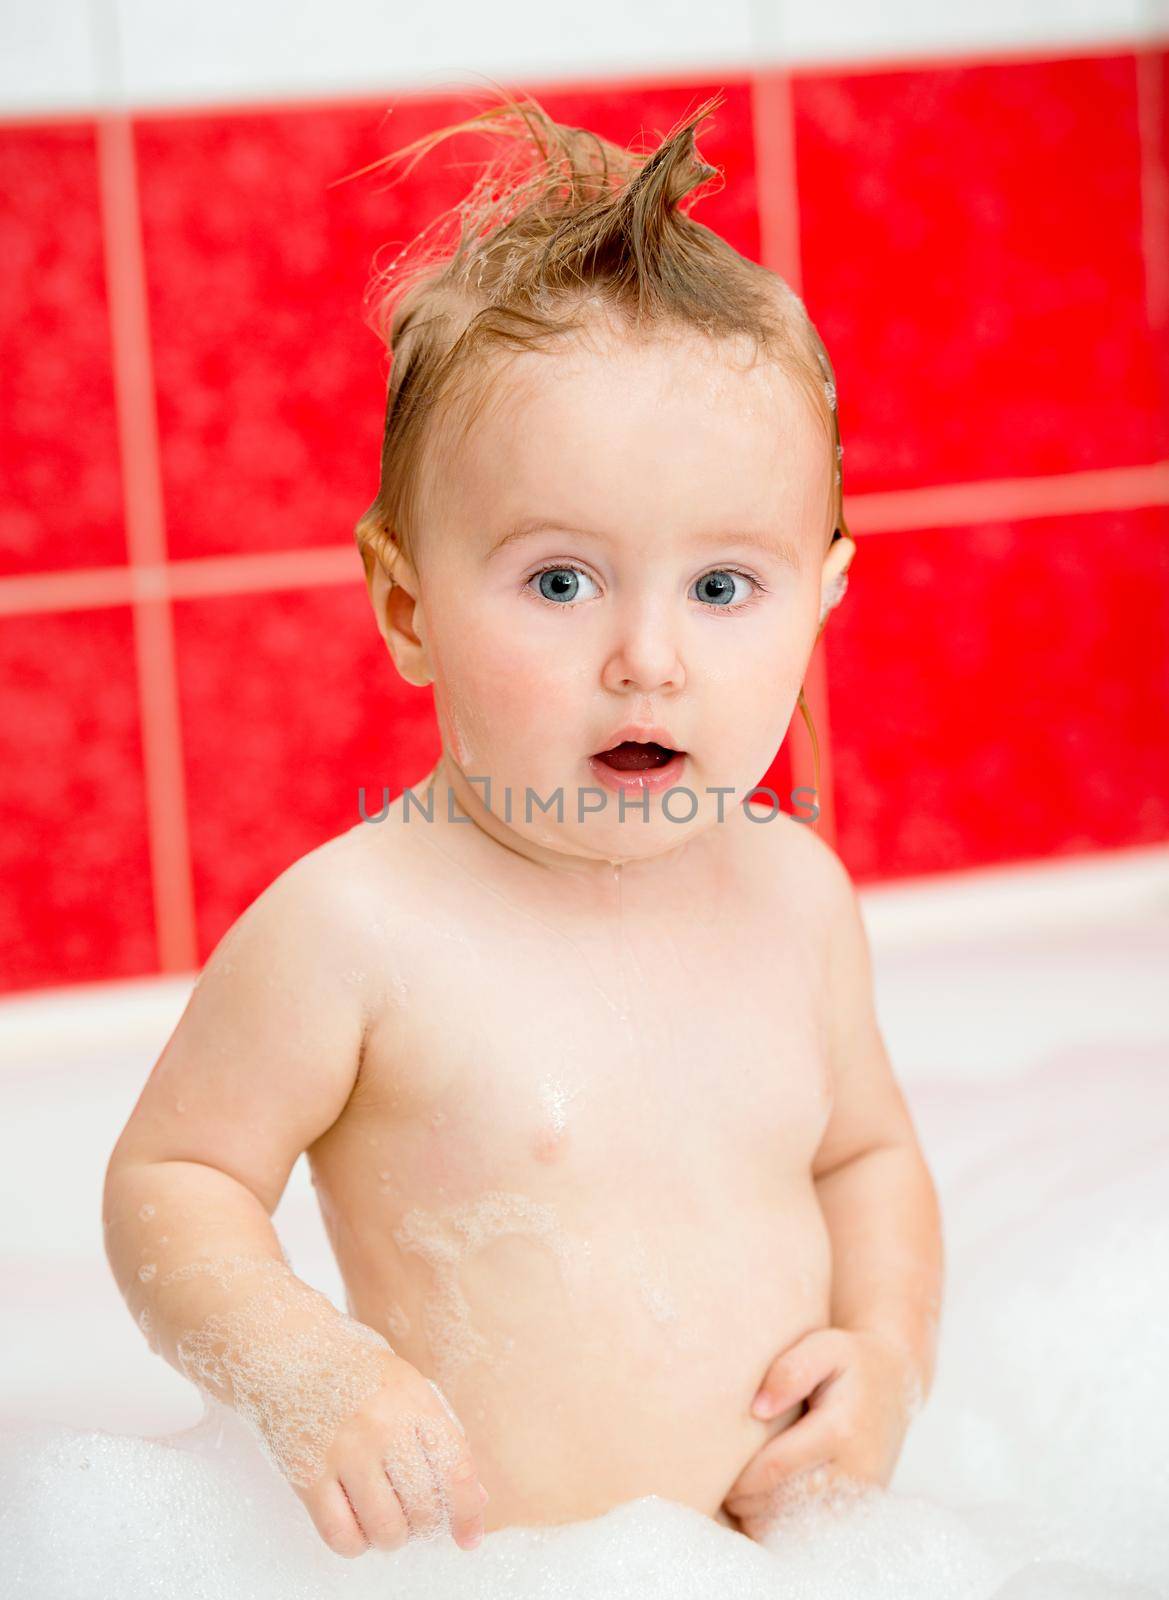 little baby taking a bath